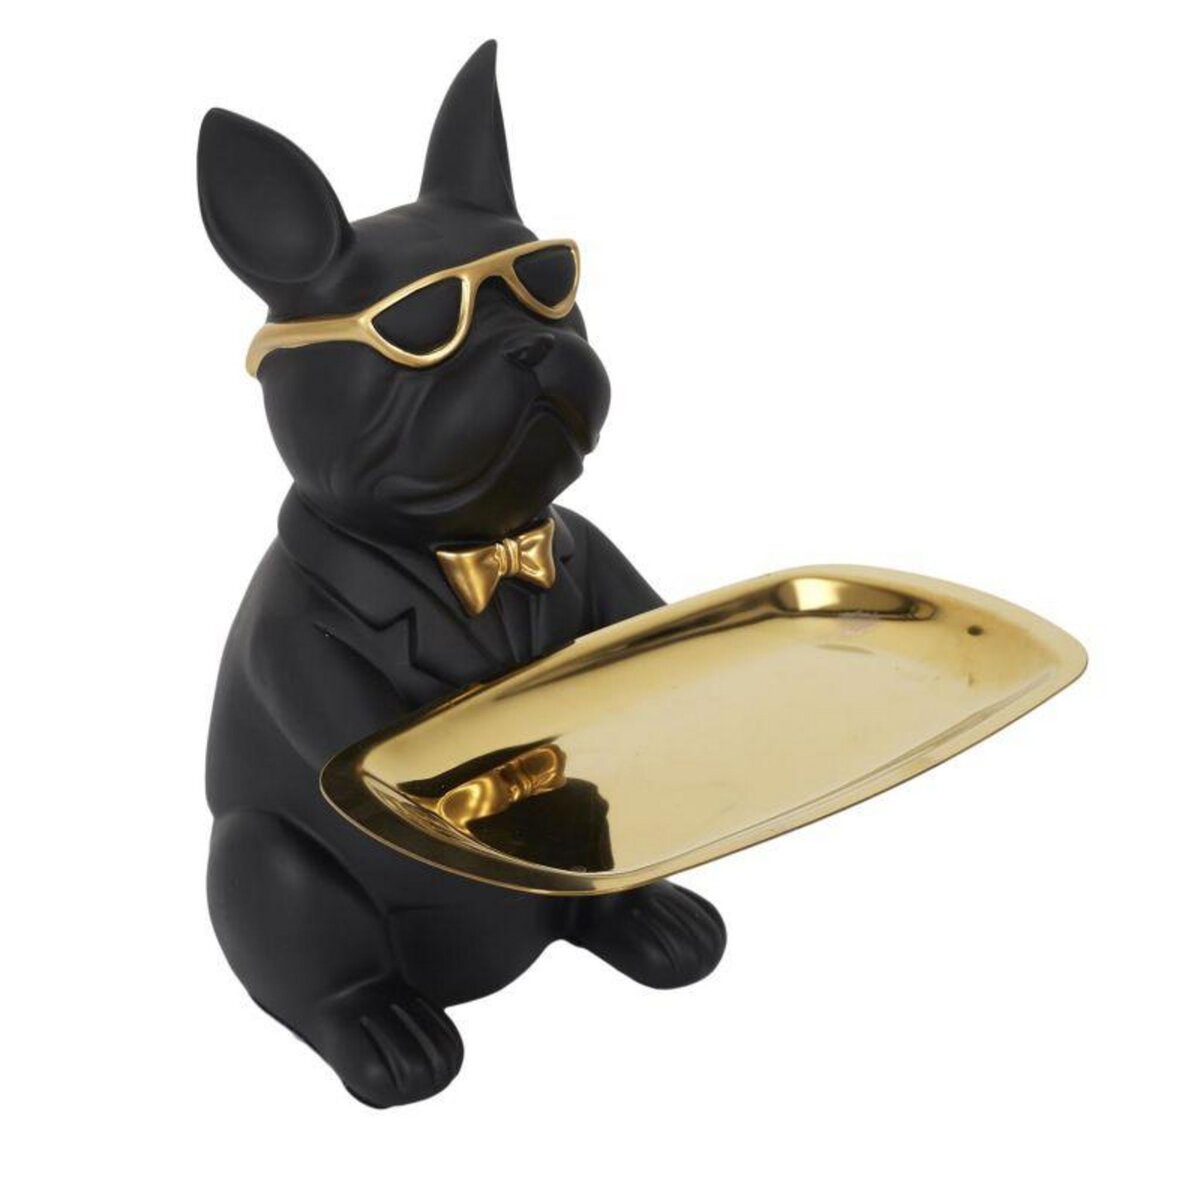 Paris Prix Statuette & Vide-Poche  Bulldog  21cm Noir